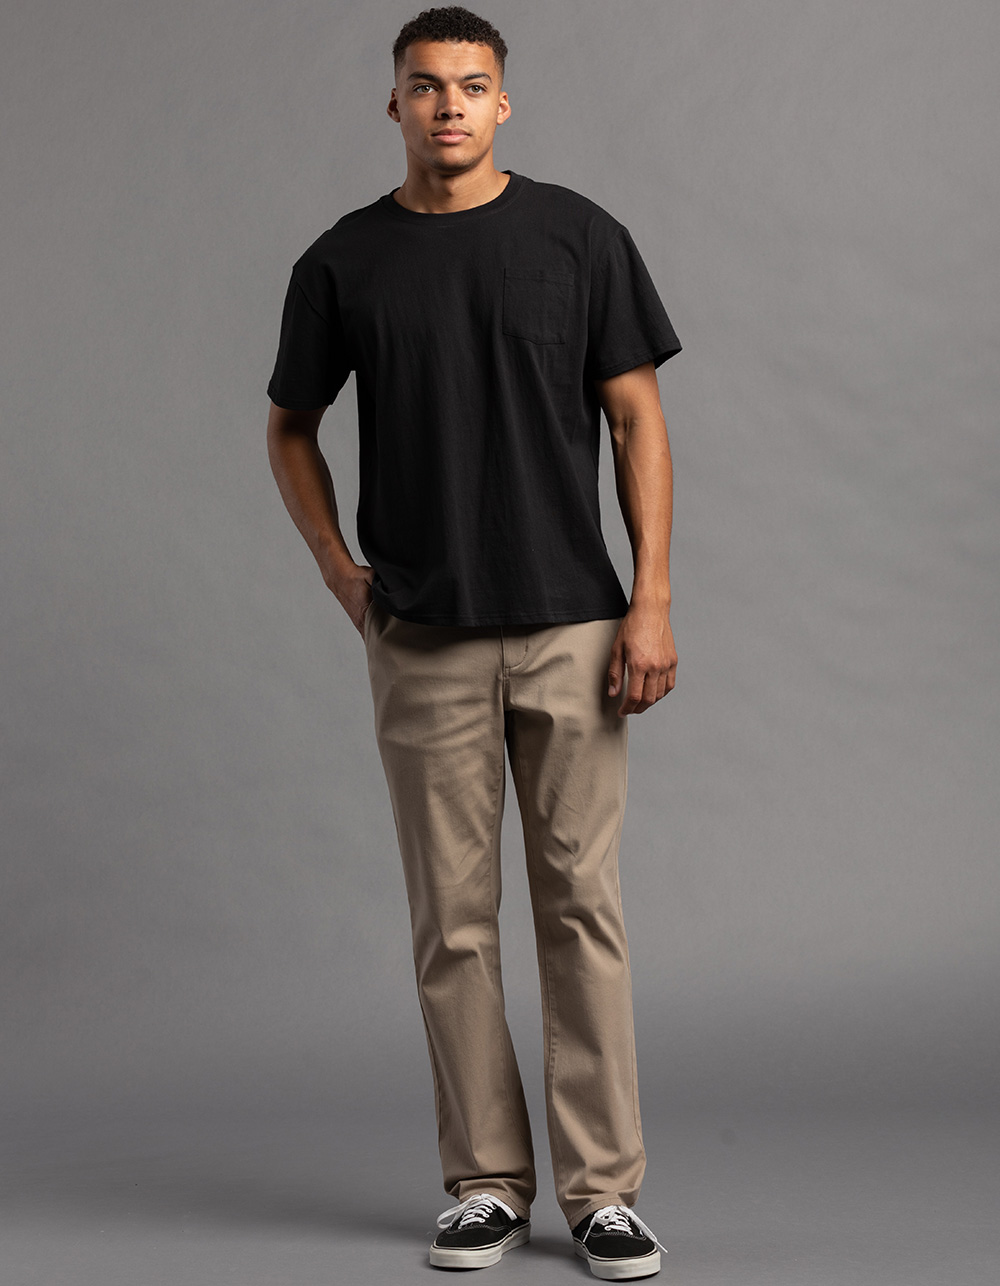 Plaid&Plain Men's Skinny Stretchy Khaki Pants Colored Pants Slim Fit Slacks  Tapered Trousers 819 Black 27X28 at Amazon Men's Clothing store